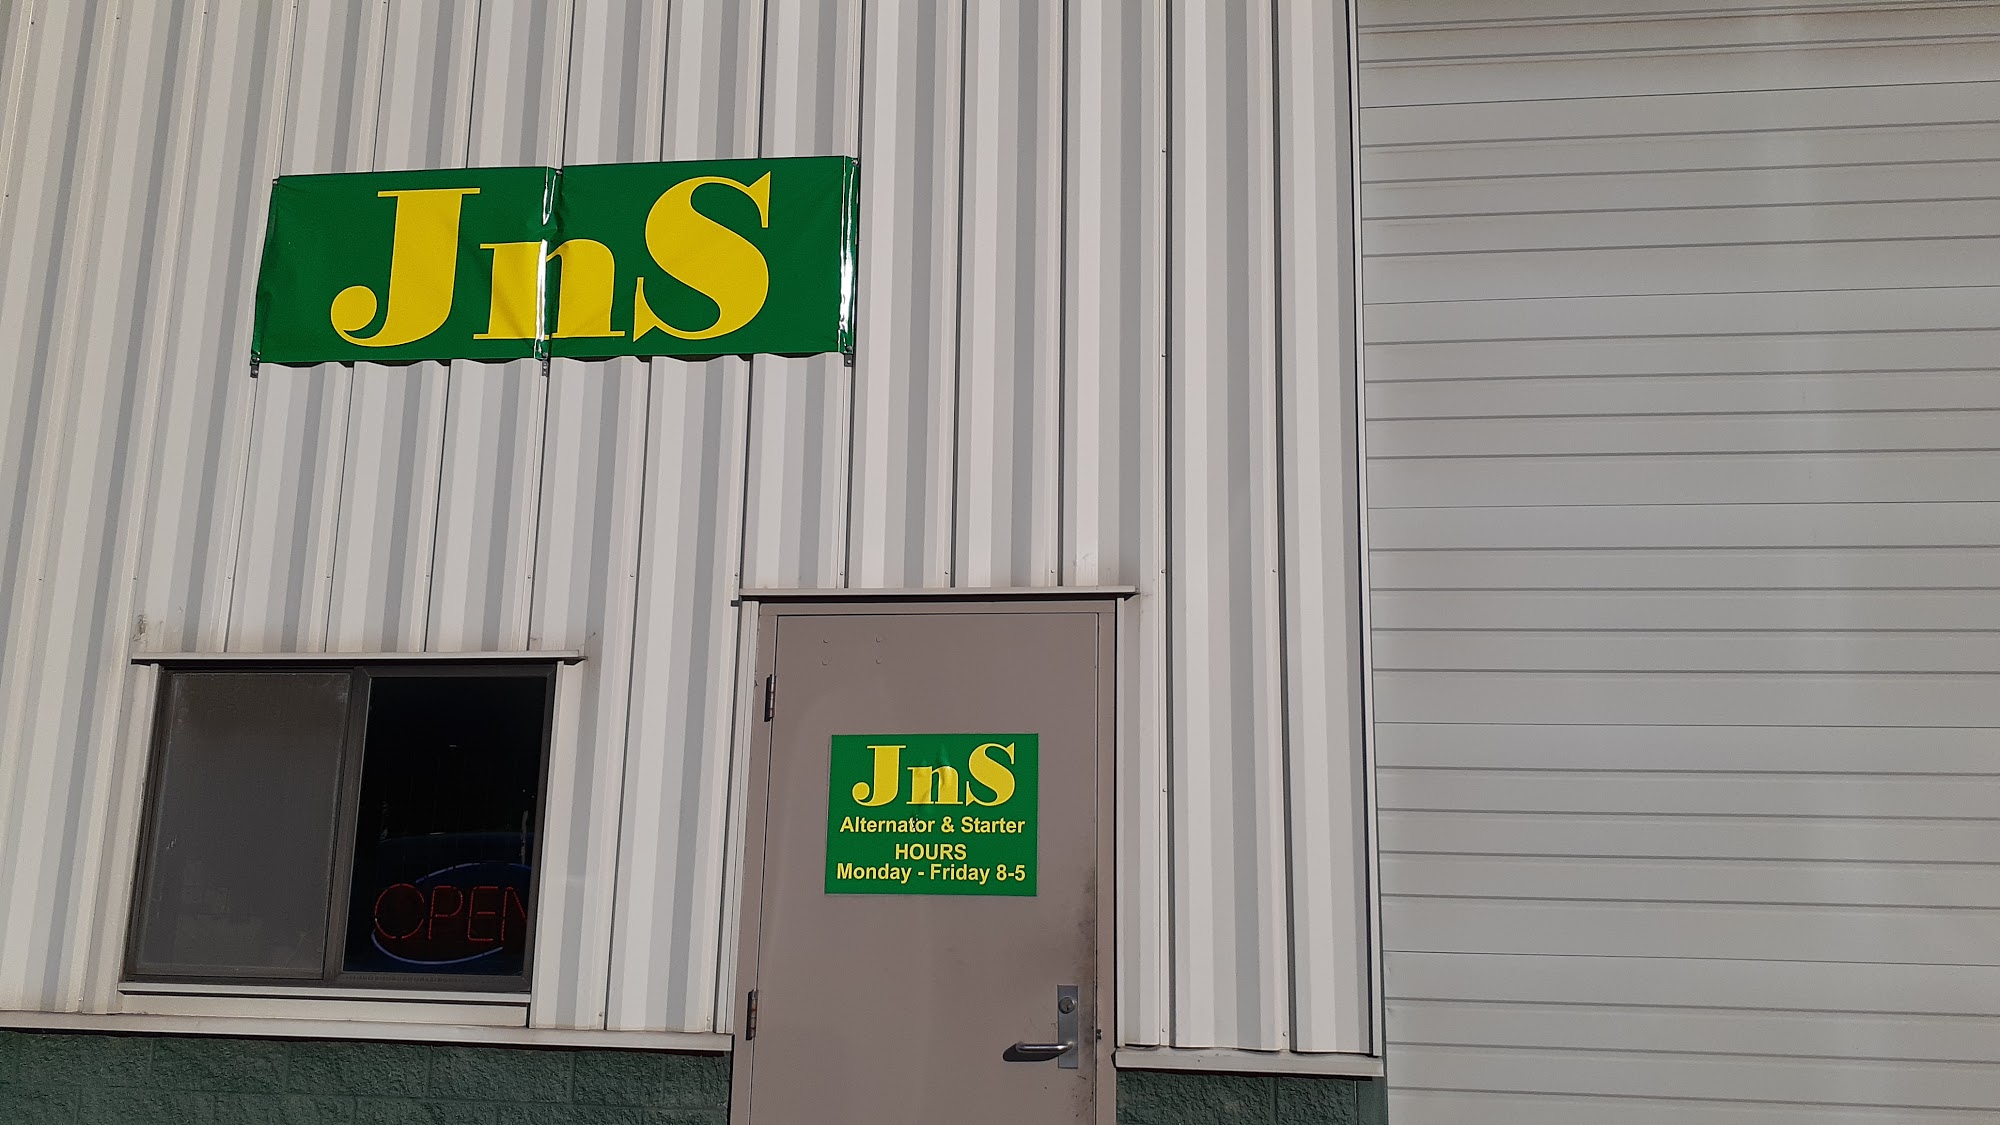 JNS Alternator & Starter LLC